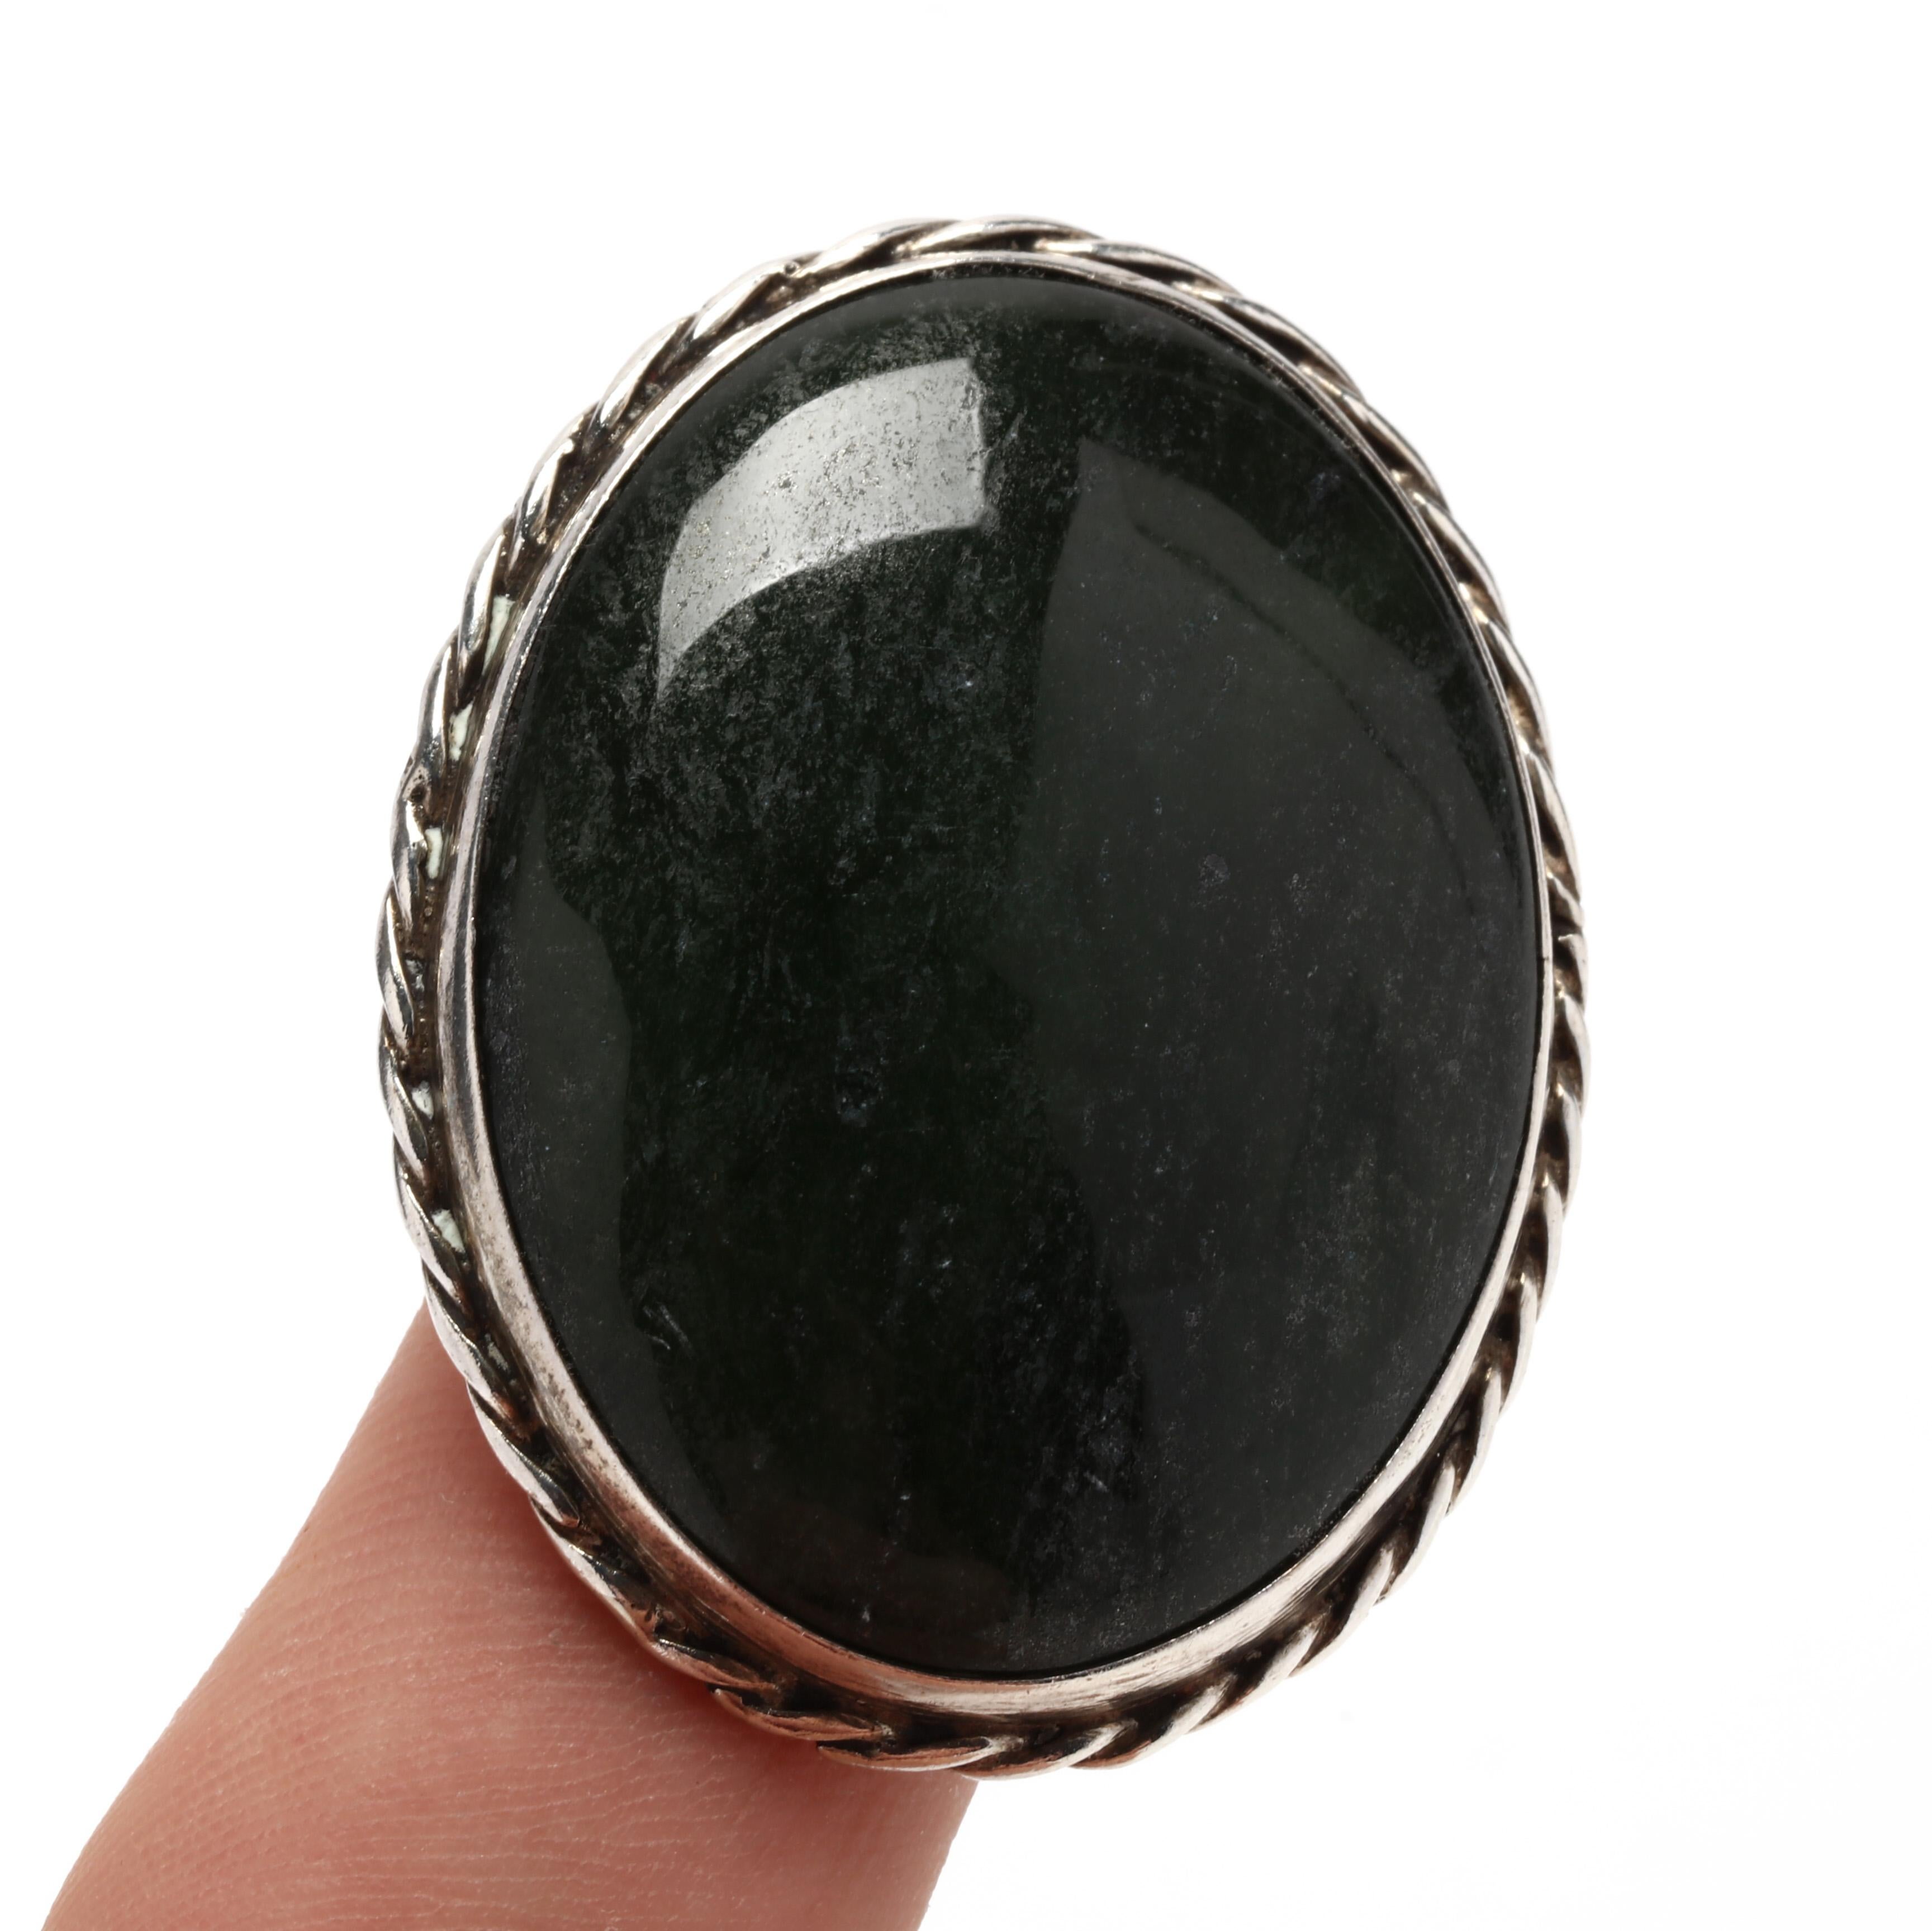 Ce magnifique pendentif ovale en jade néphrite est fabriqué à la main en argent sterling et constitue l'ajout parfait à toute collection de bijoux. Fabriqué en jade néphrite naturel, ce pendentif mesure 1,75 pouce de long et est poli pour obtenir